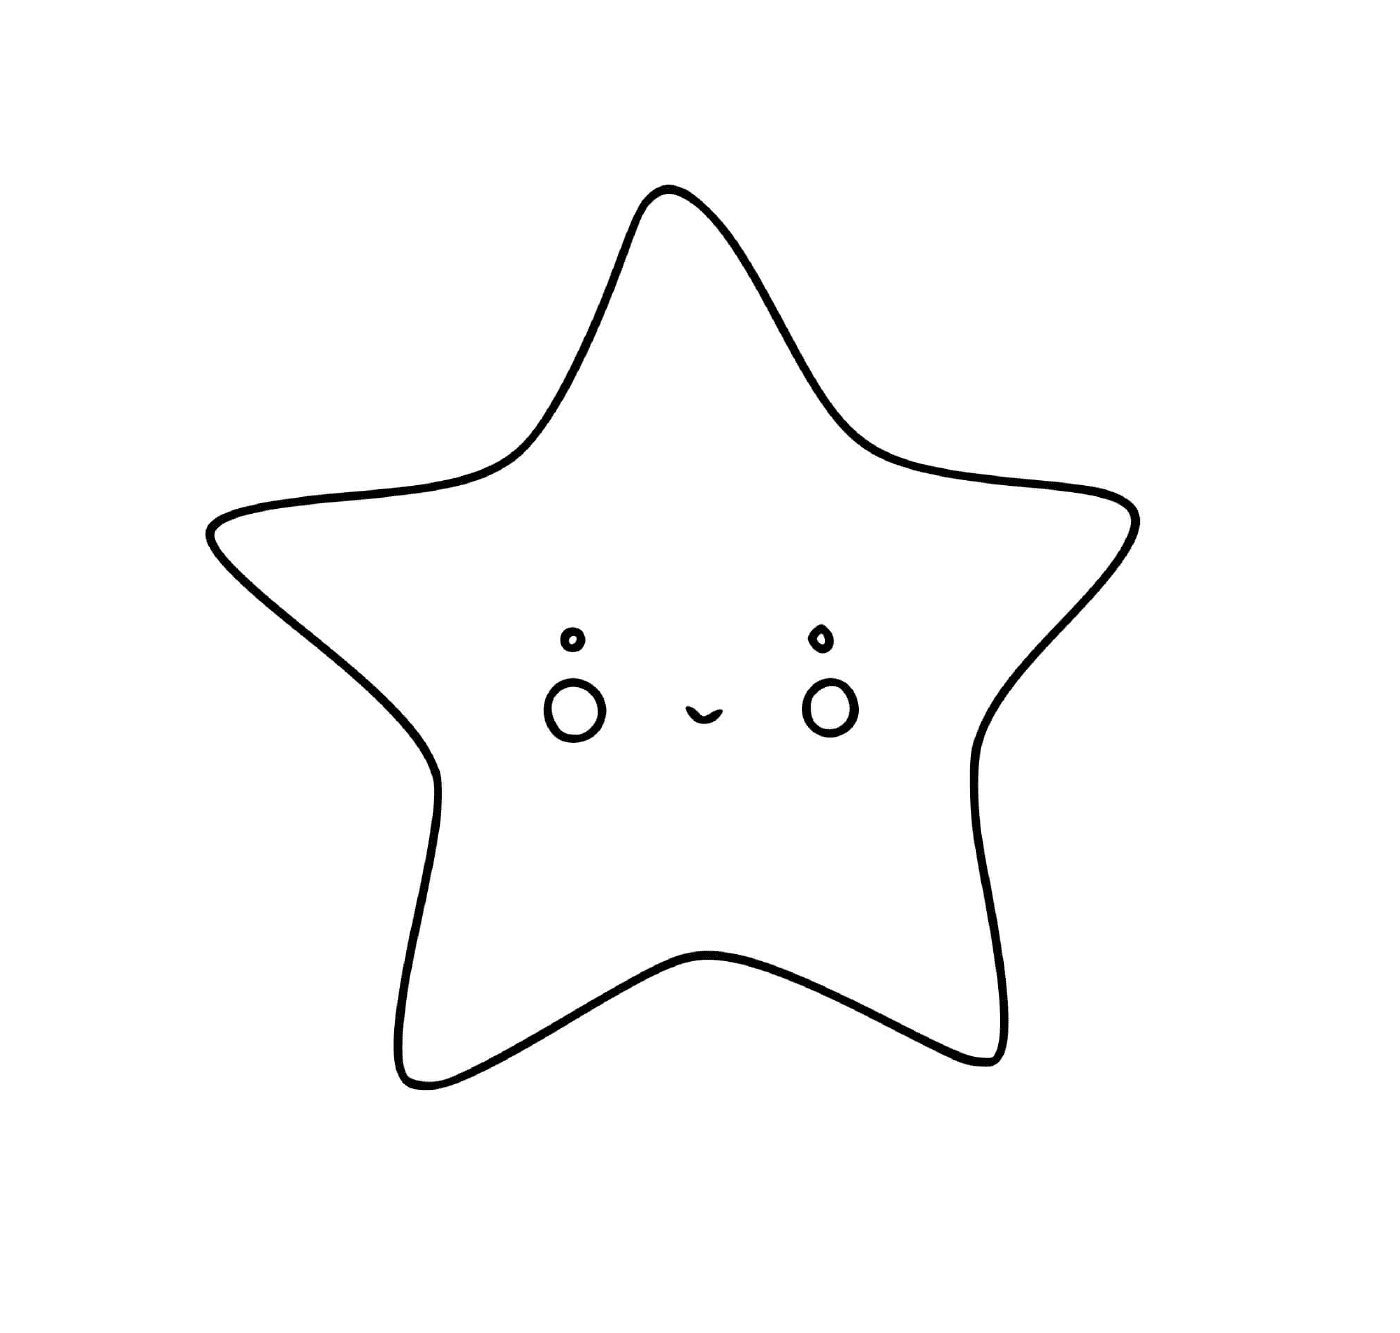  Smileing star, full of joy 